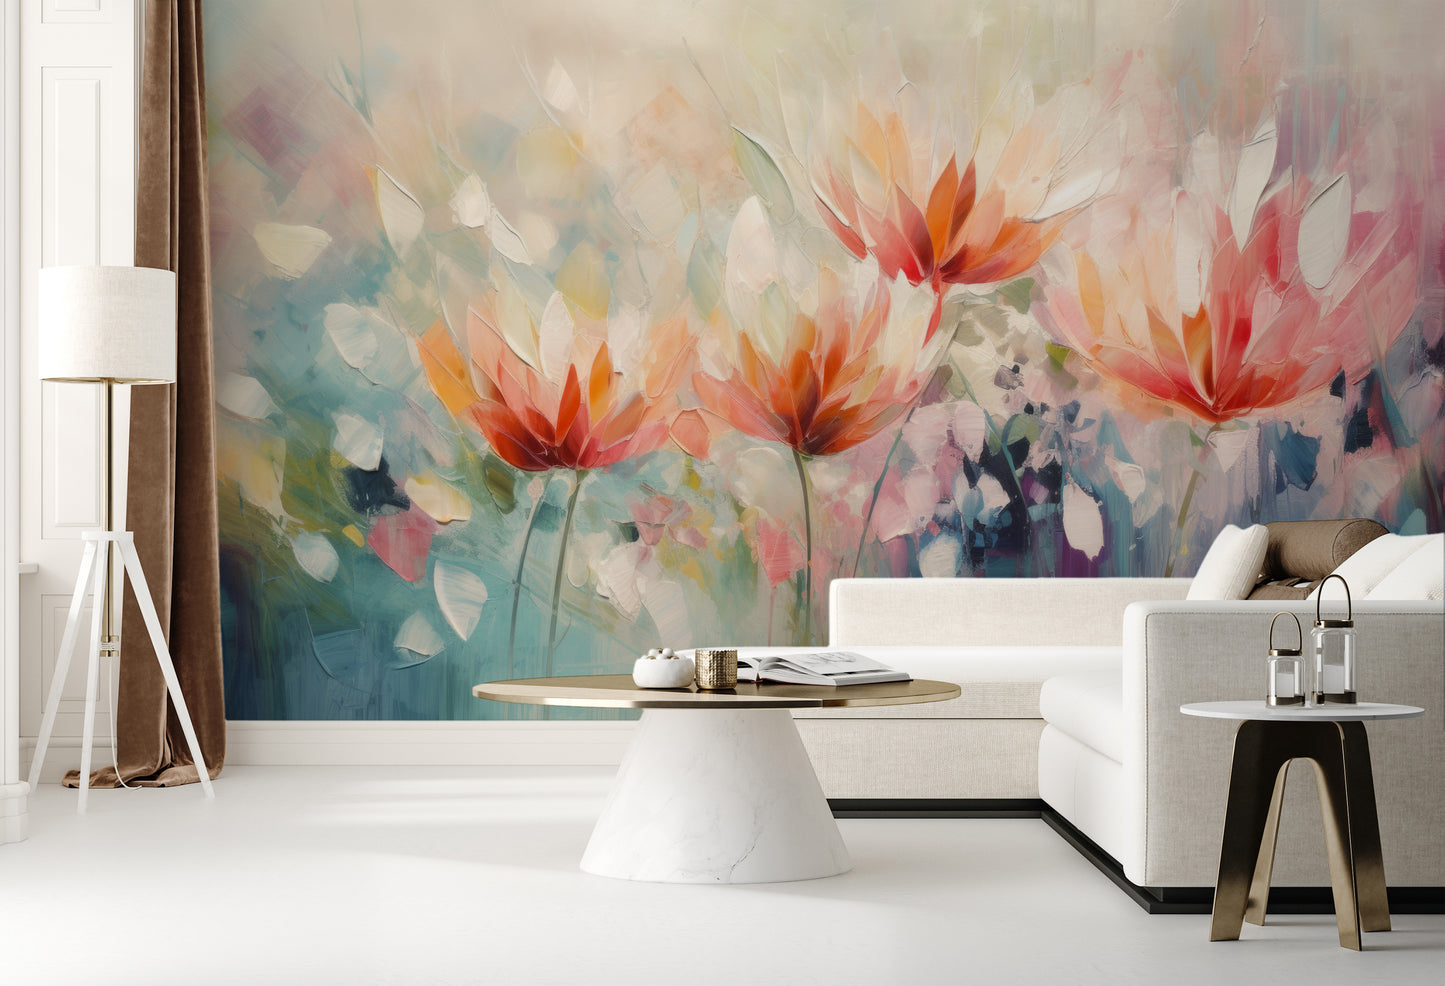 Wzór fototapety malowanej o nazwie Vibrant Floral Symphony pokazanej w aranżacji wnętrza.